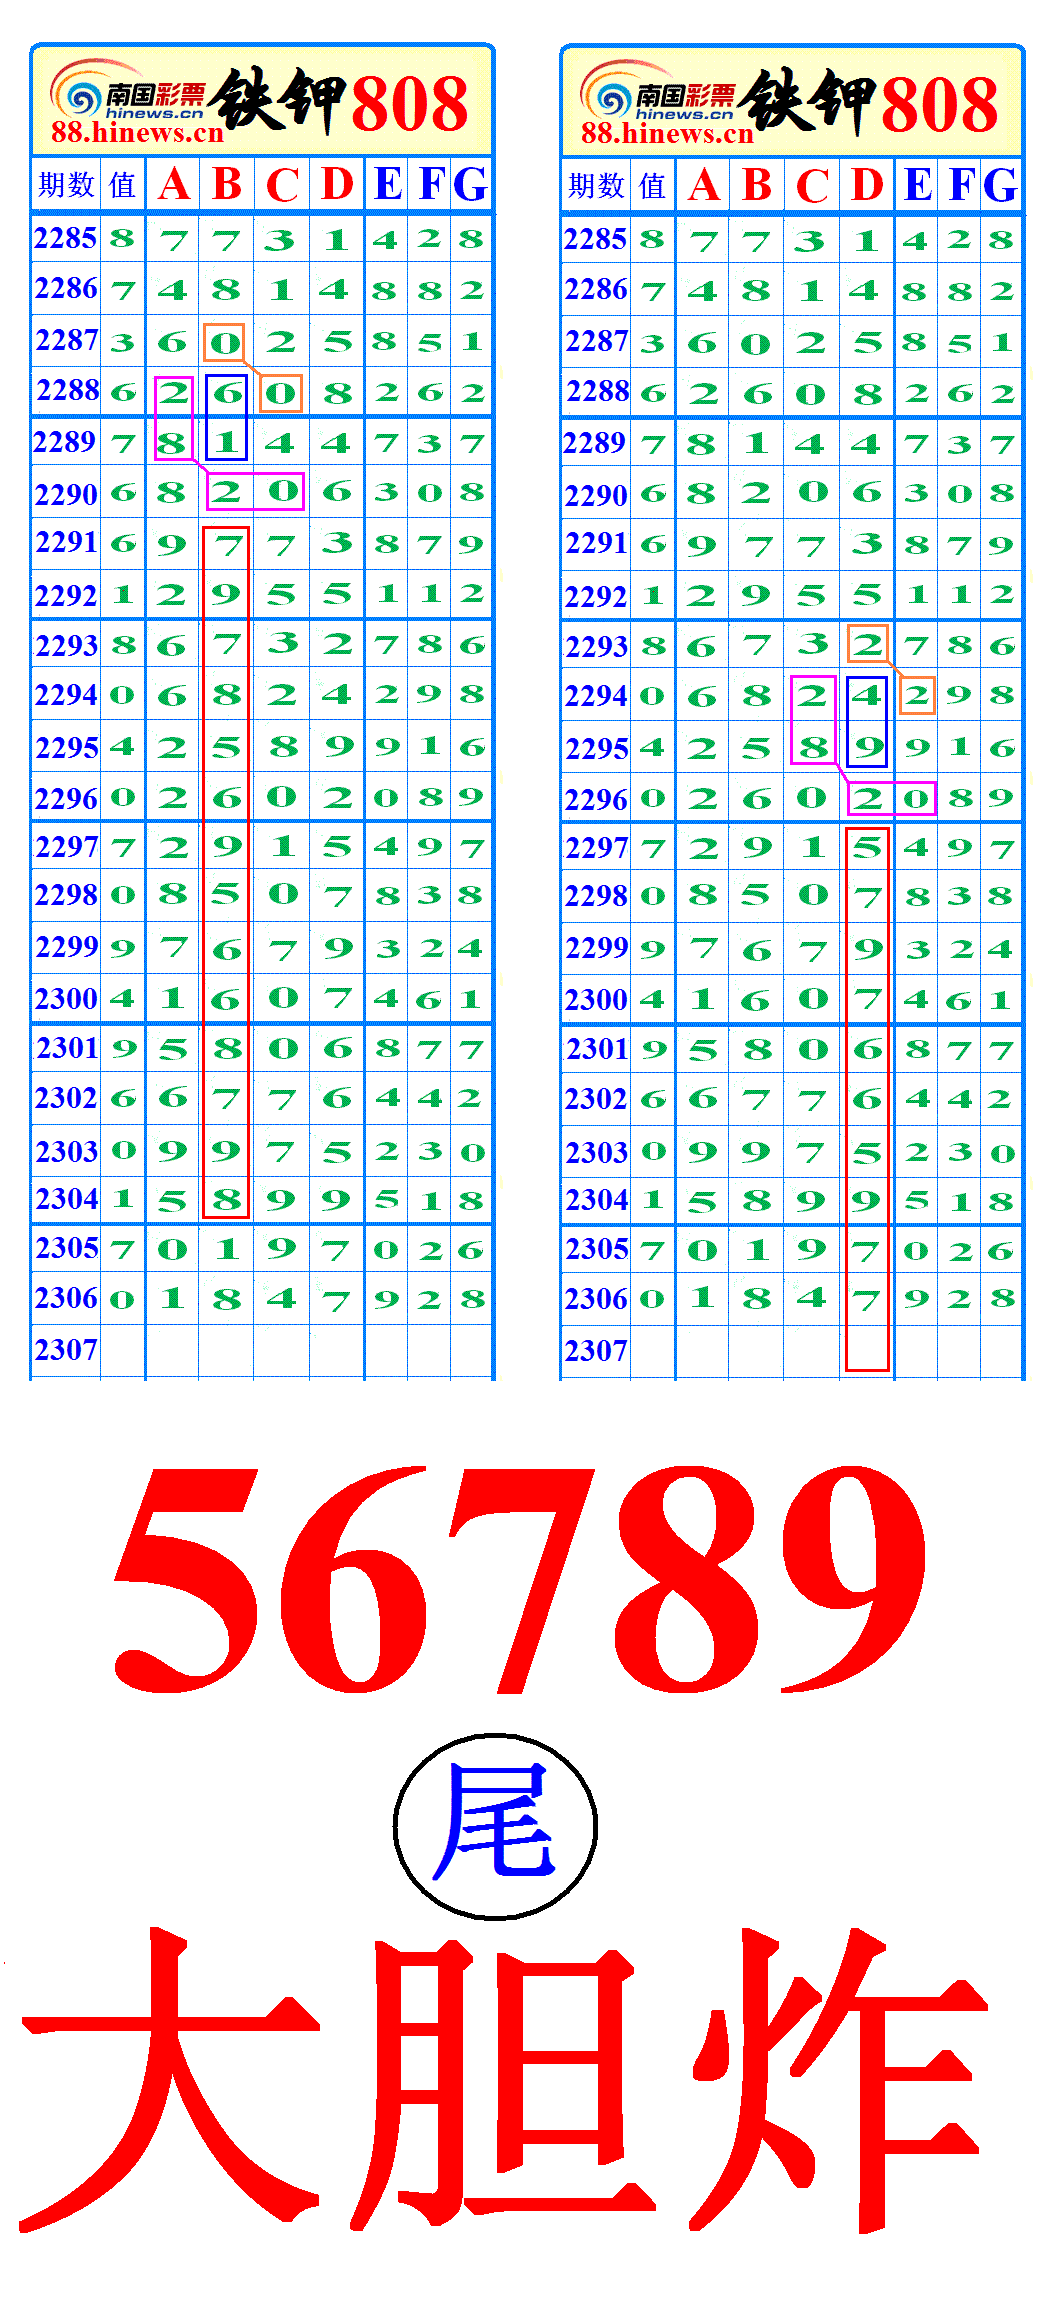 000055.GIF(221748155).GIF